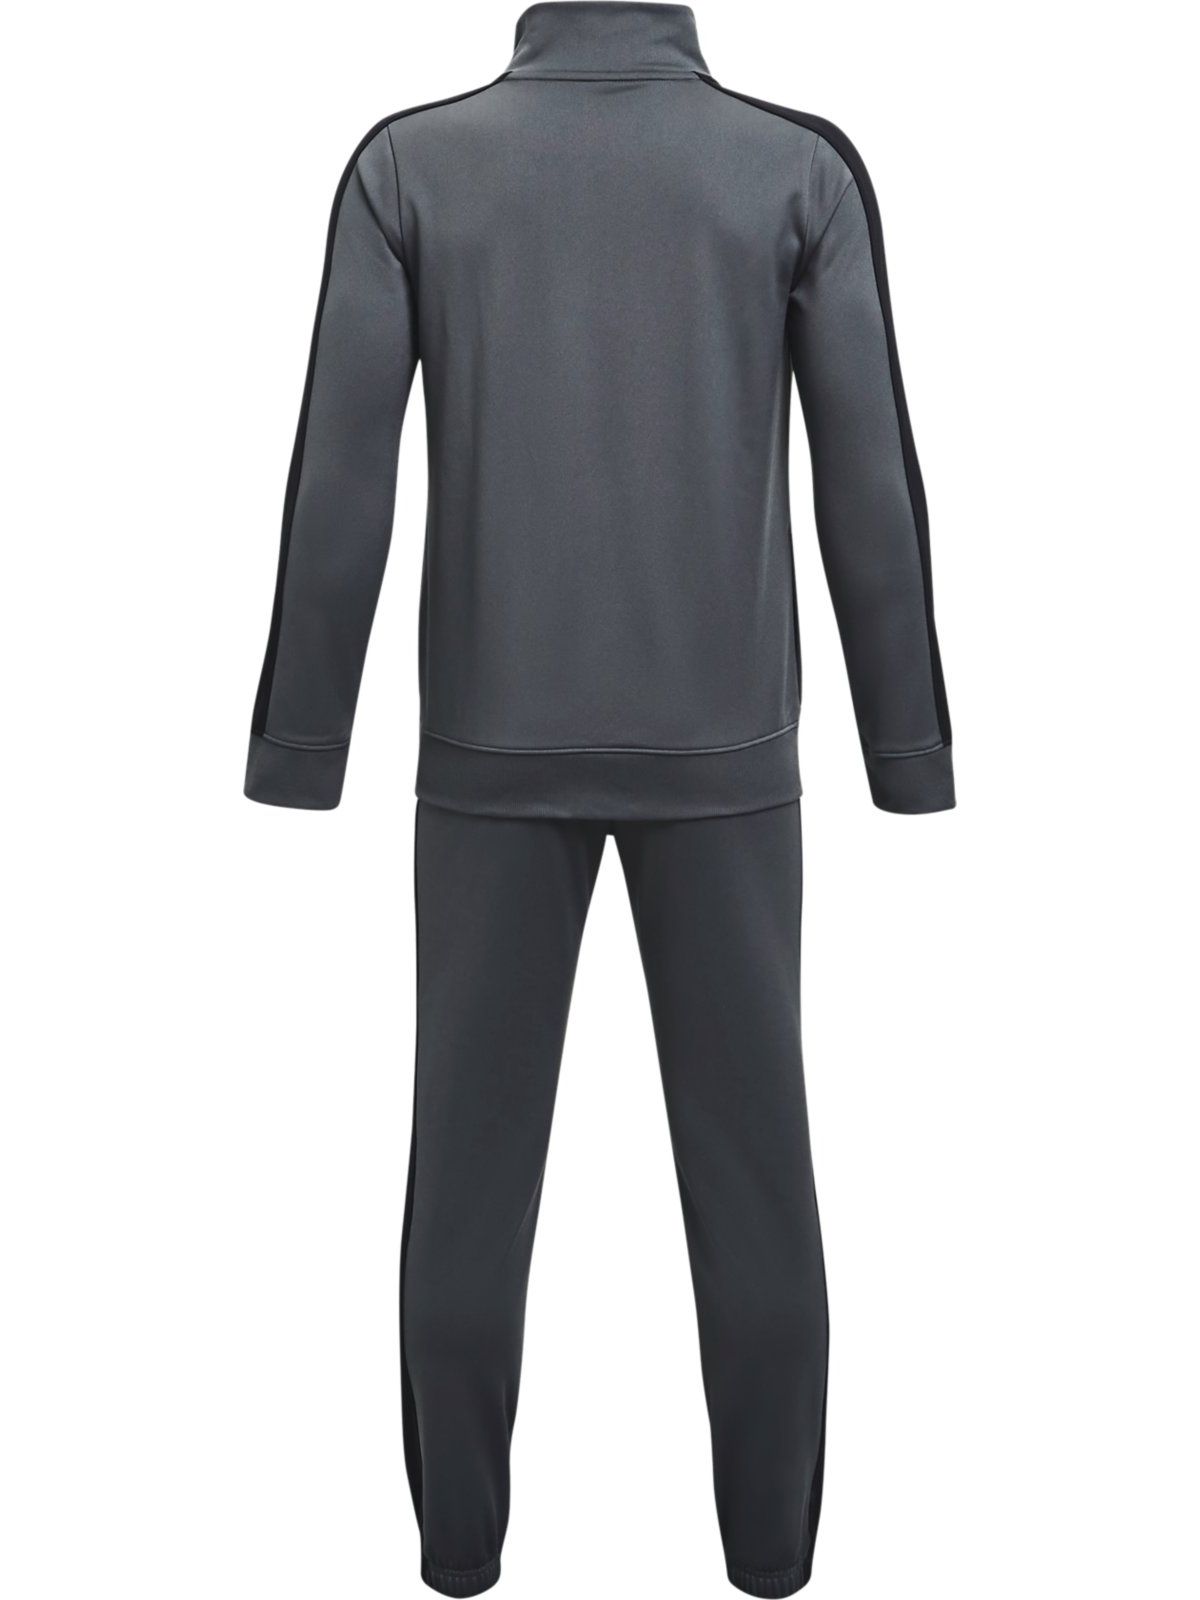 Спортивный костюм Under Armour Knit Track Suit 1363290-012 цв.серый р. YXL